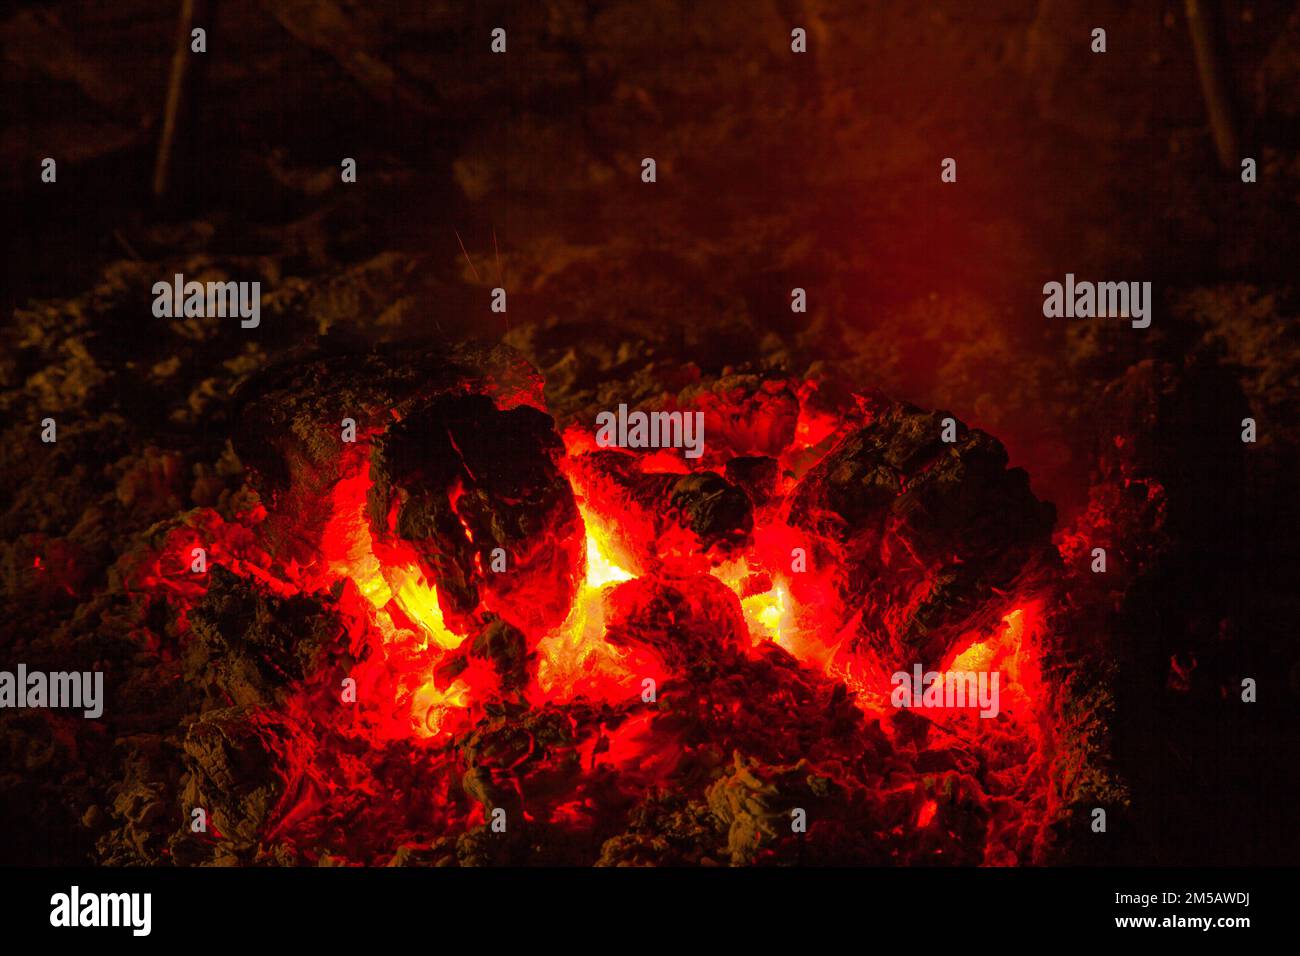 Die glühende rote Glut, nachdem die Flammen eines Lagerfeuers ausbrannten Stockfoto